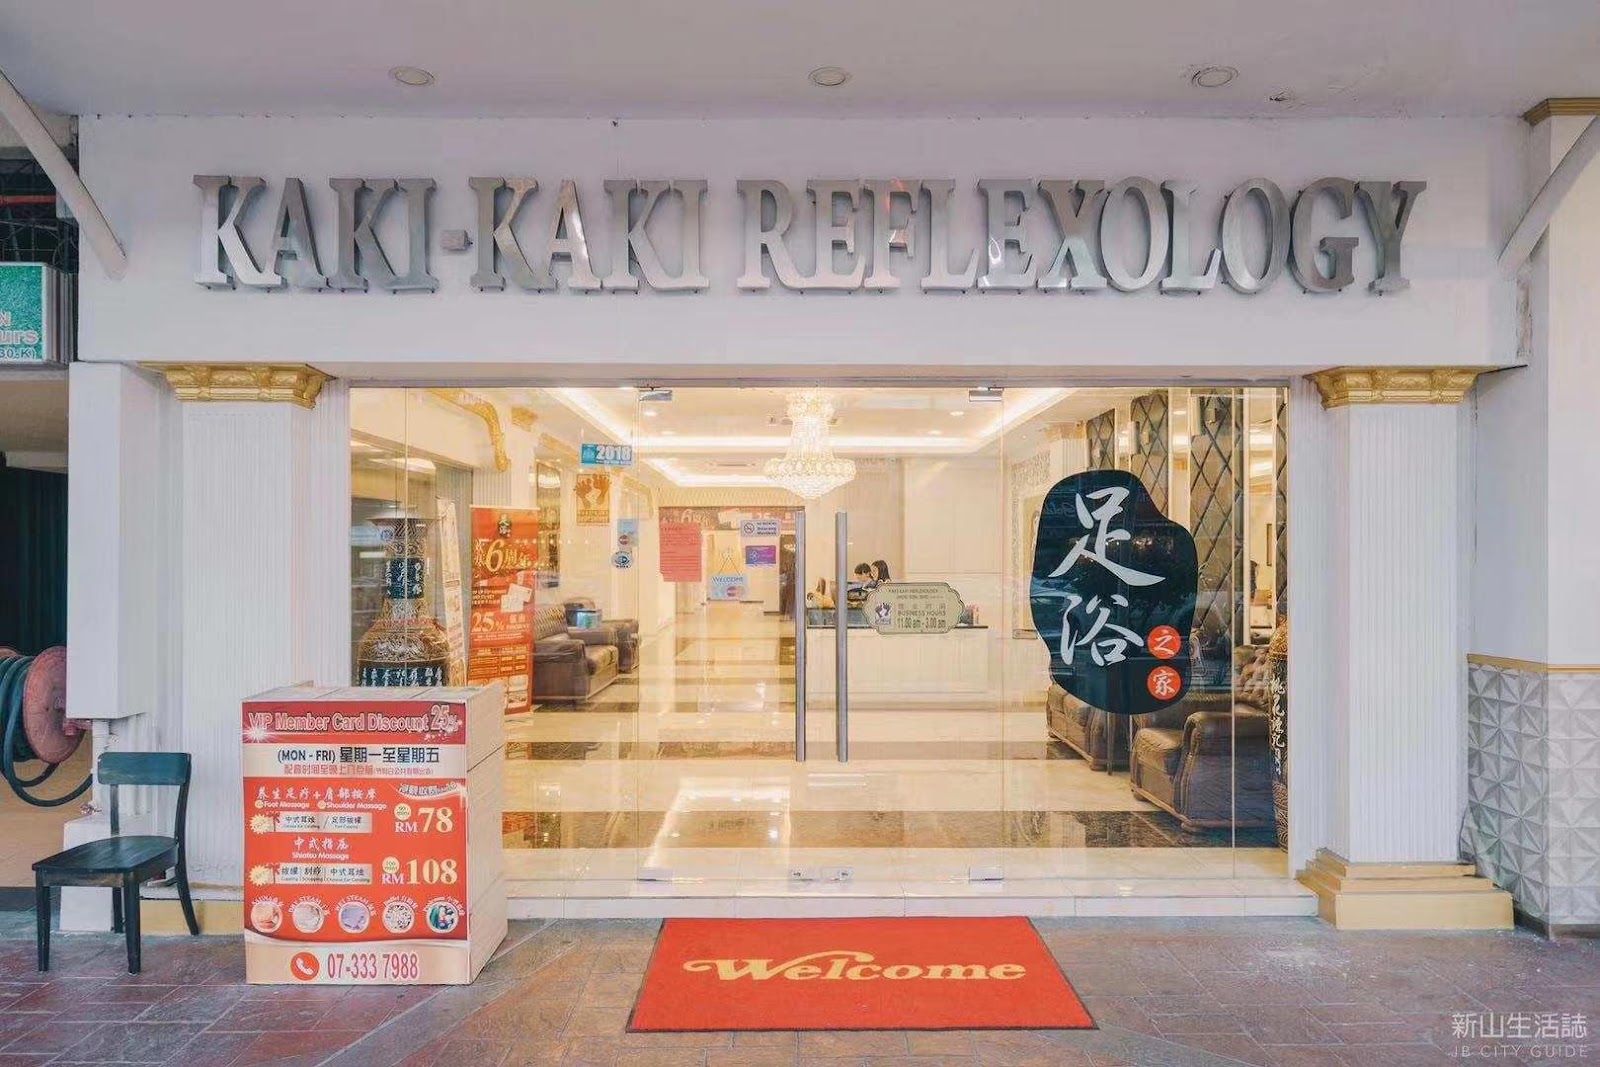 Kaki Kaki Reflexology shopfront